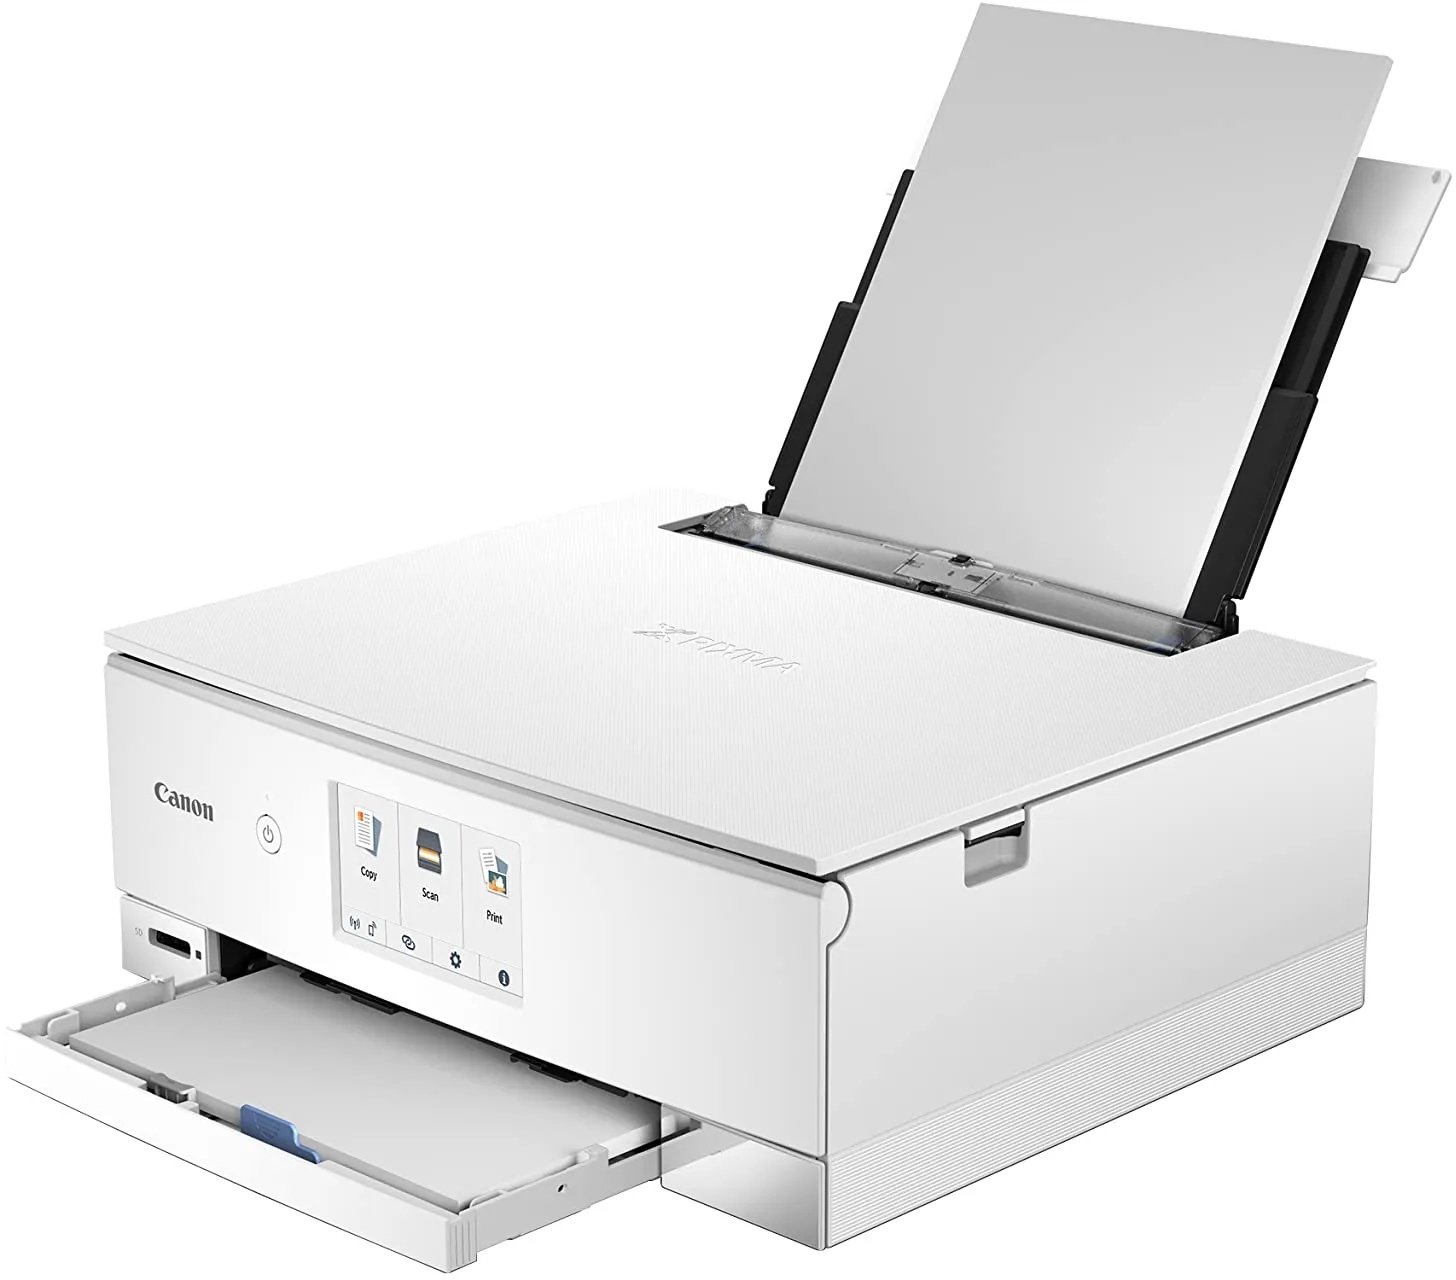 Canon PIXMA TS8351a Drucker Farbtintenstrahl Multifunktionsgerät DIN A4 (Scanner, Kopierer, 4.800 x 1.200 dpi, 6 separate Tinten, USB, WLAN, AirPrint, Duplexdruck, 2 Papierzuführungen, 5 GHz), weiß